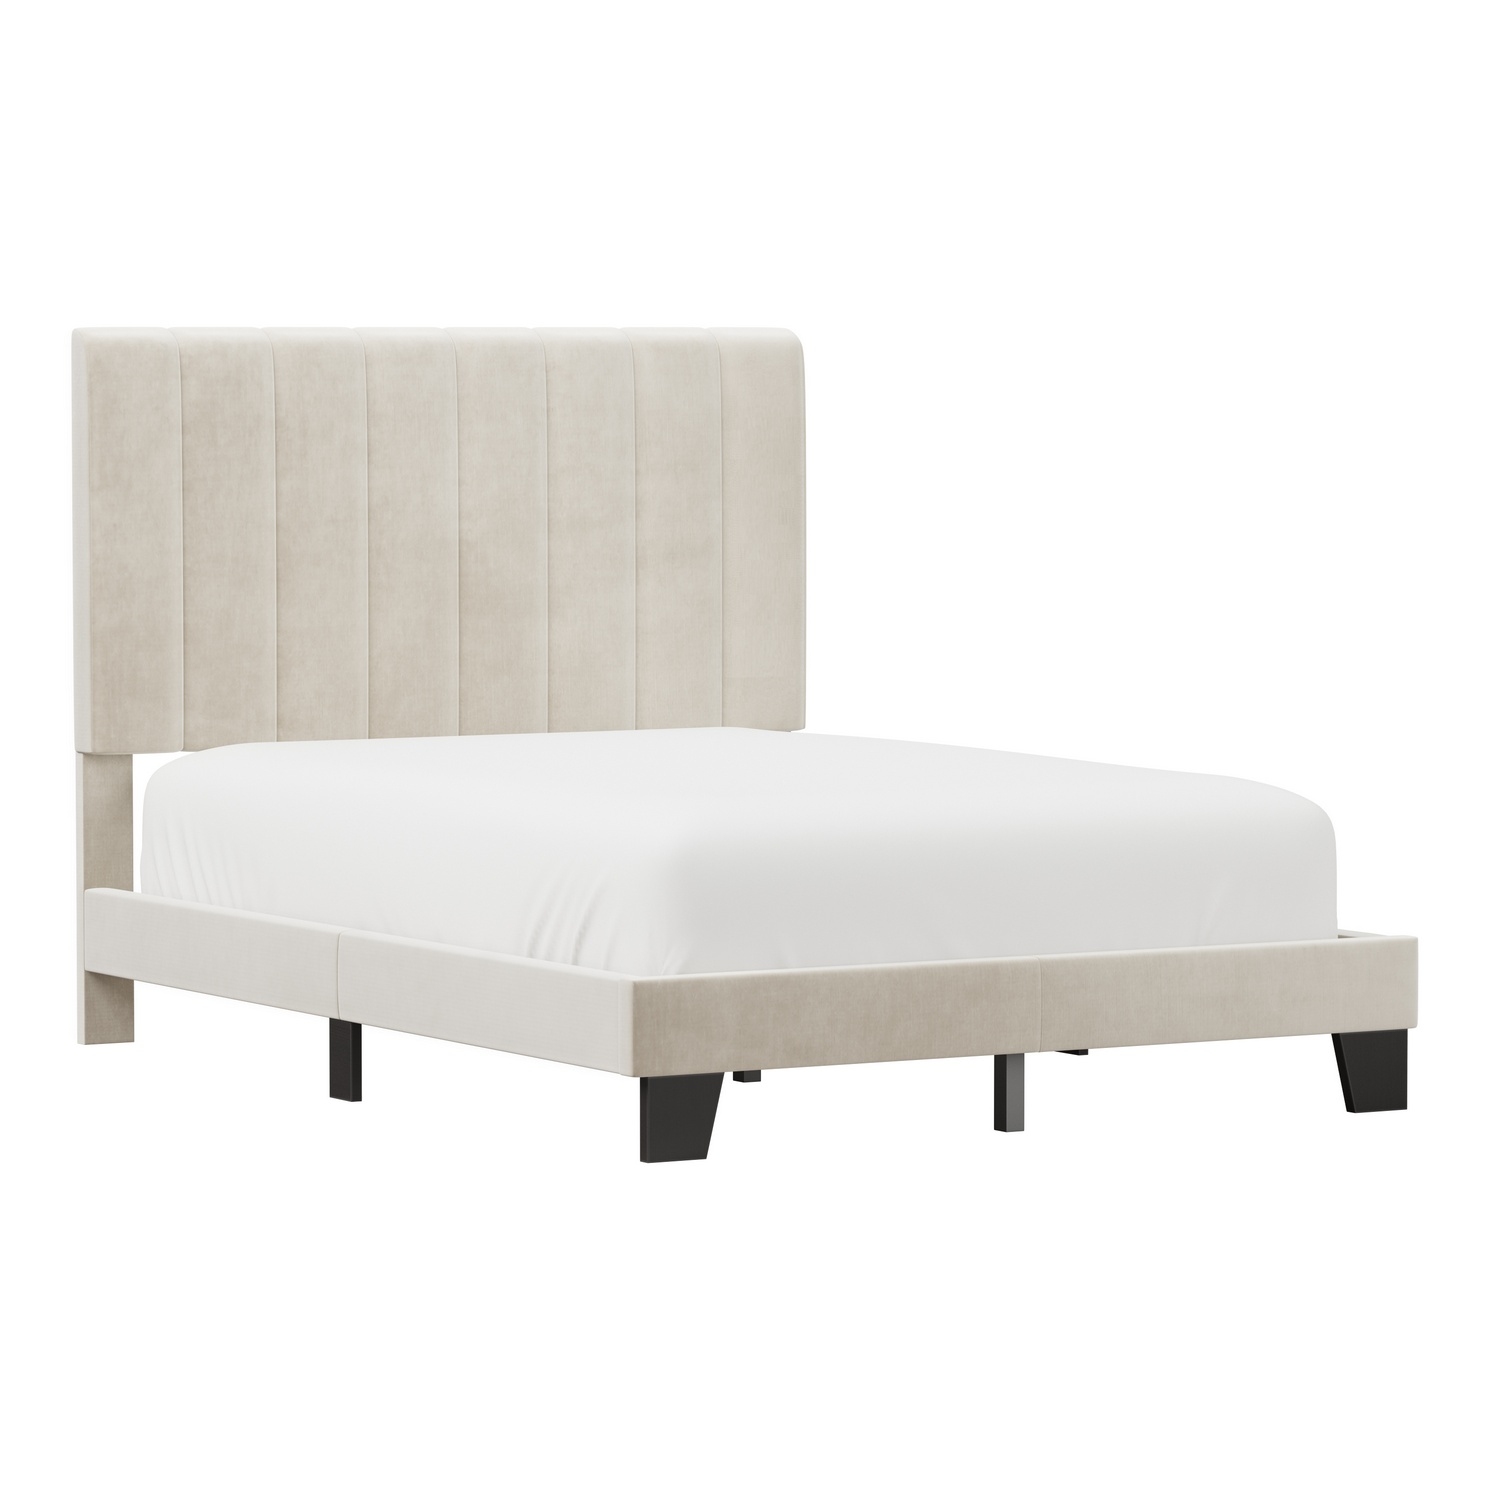 Hillsdale Crestone Upholstered Adjustable Height Platform Bed - Cream